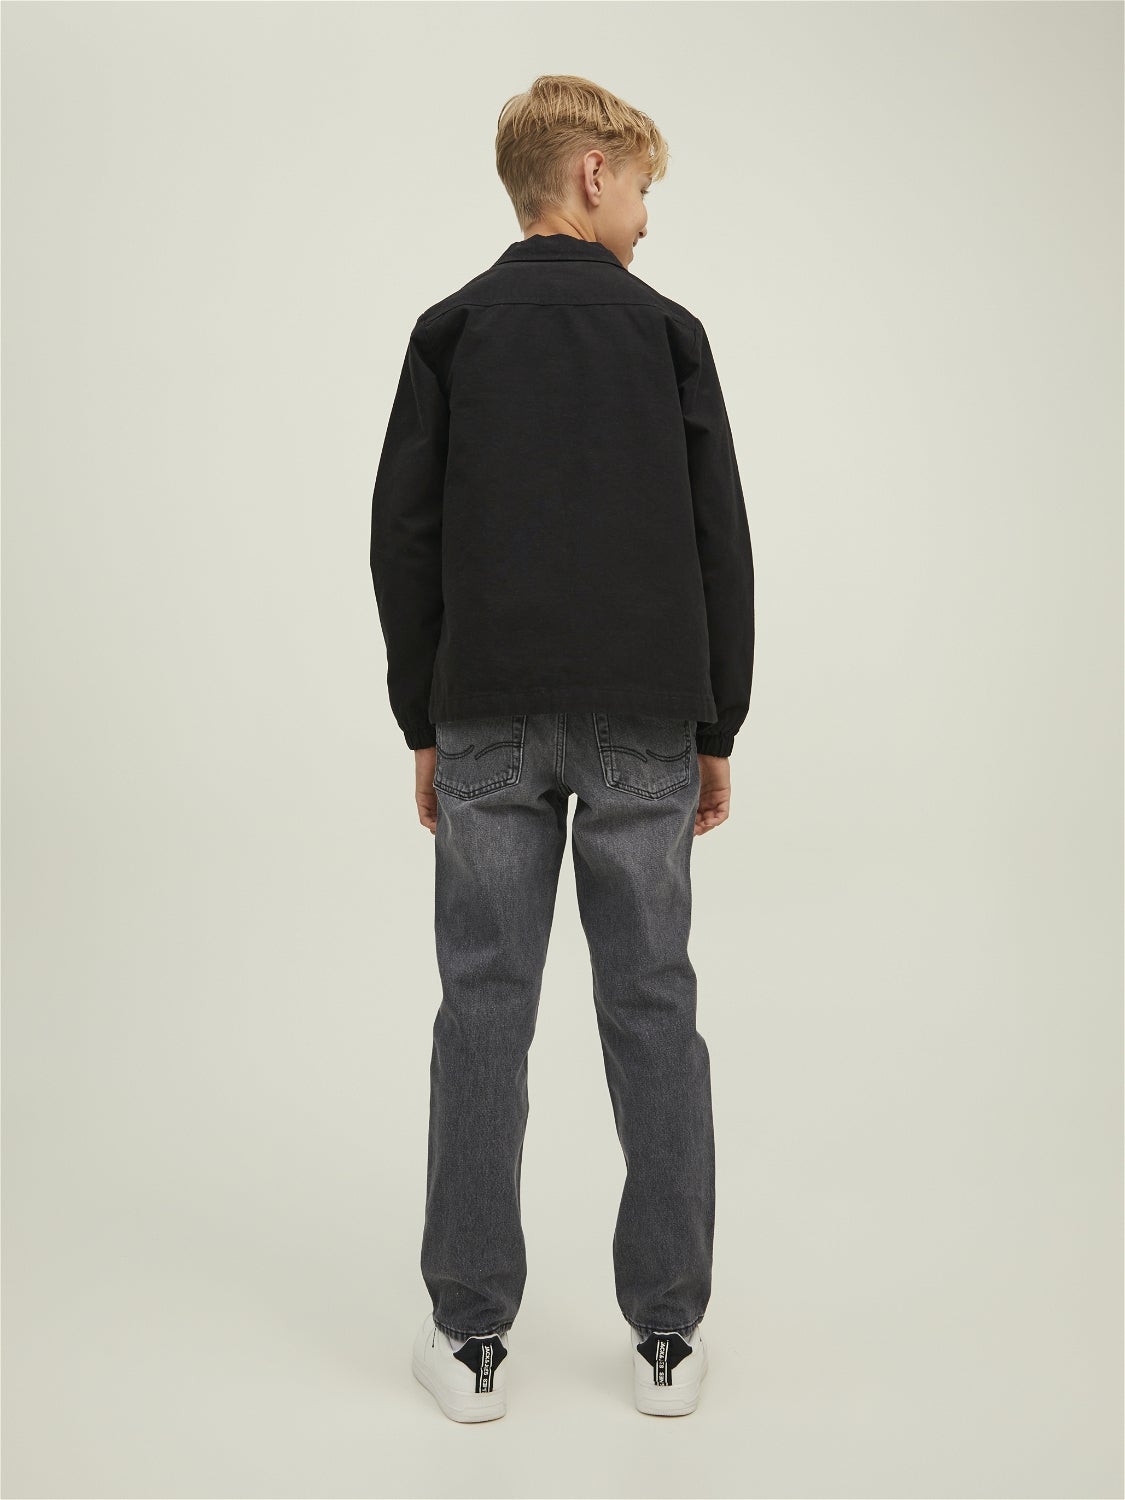 La Redoute Garçon Vêtements Pantalons & Jeans Jeans Coupe droite Jean coupe classique Boys Clark Original MF 329 